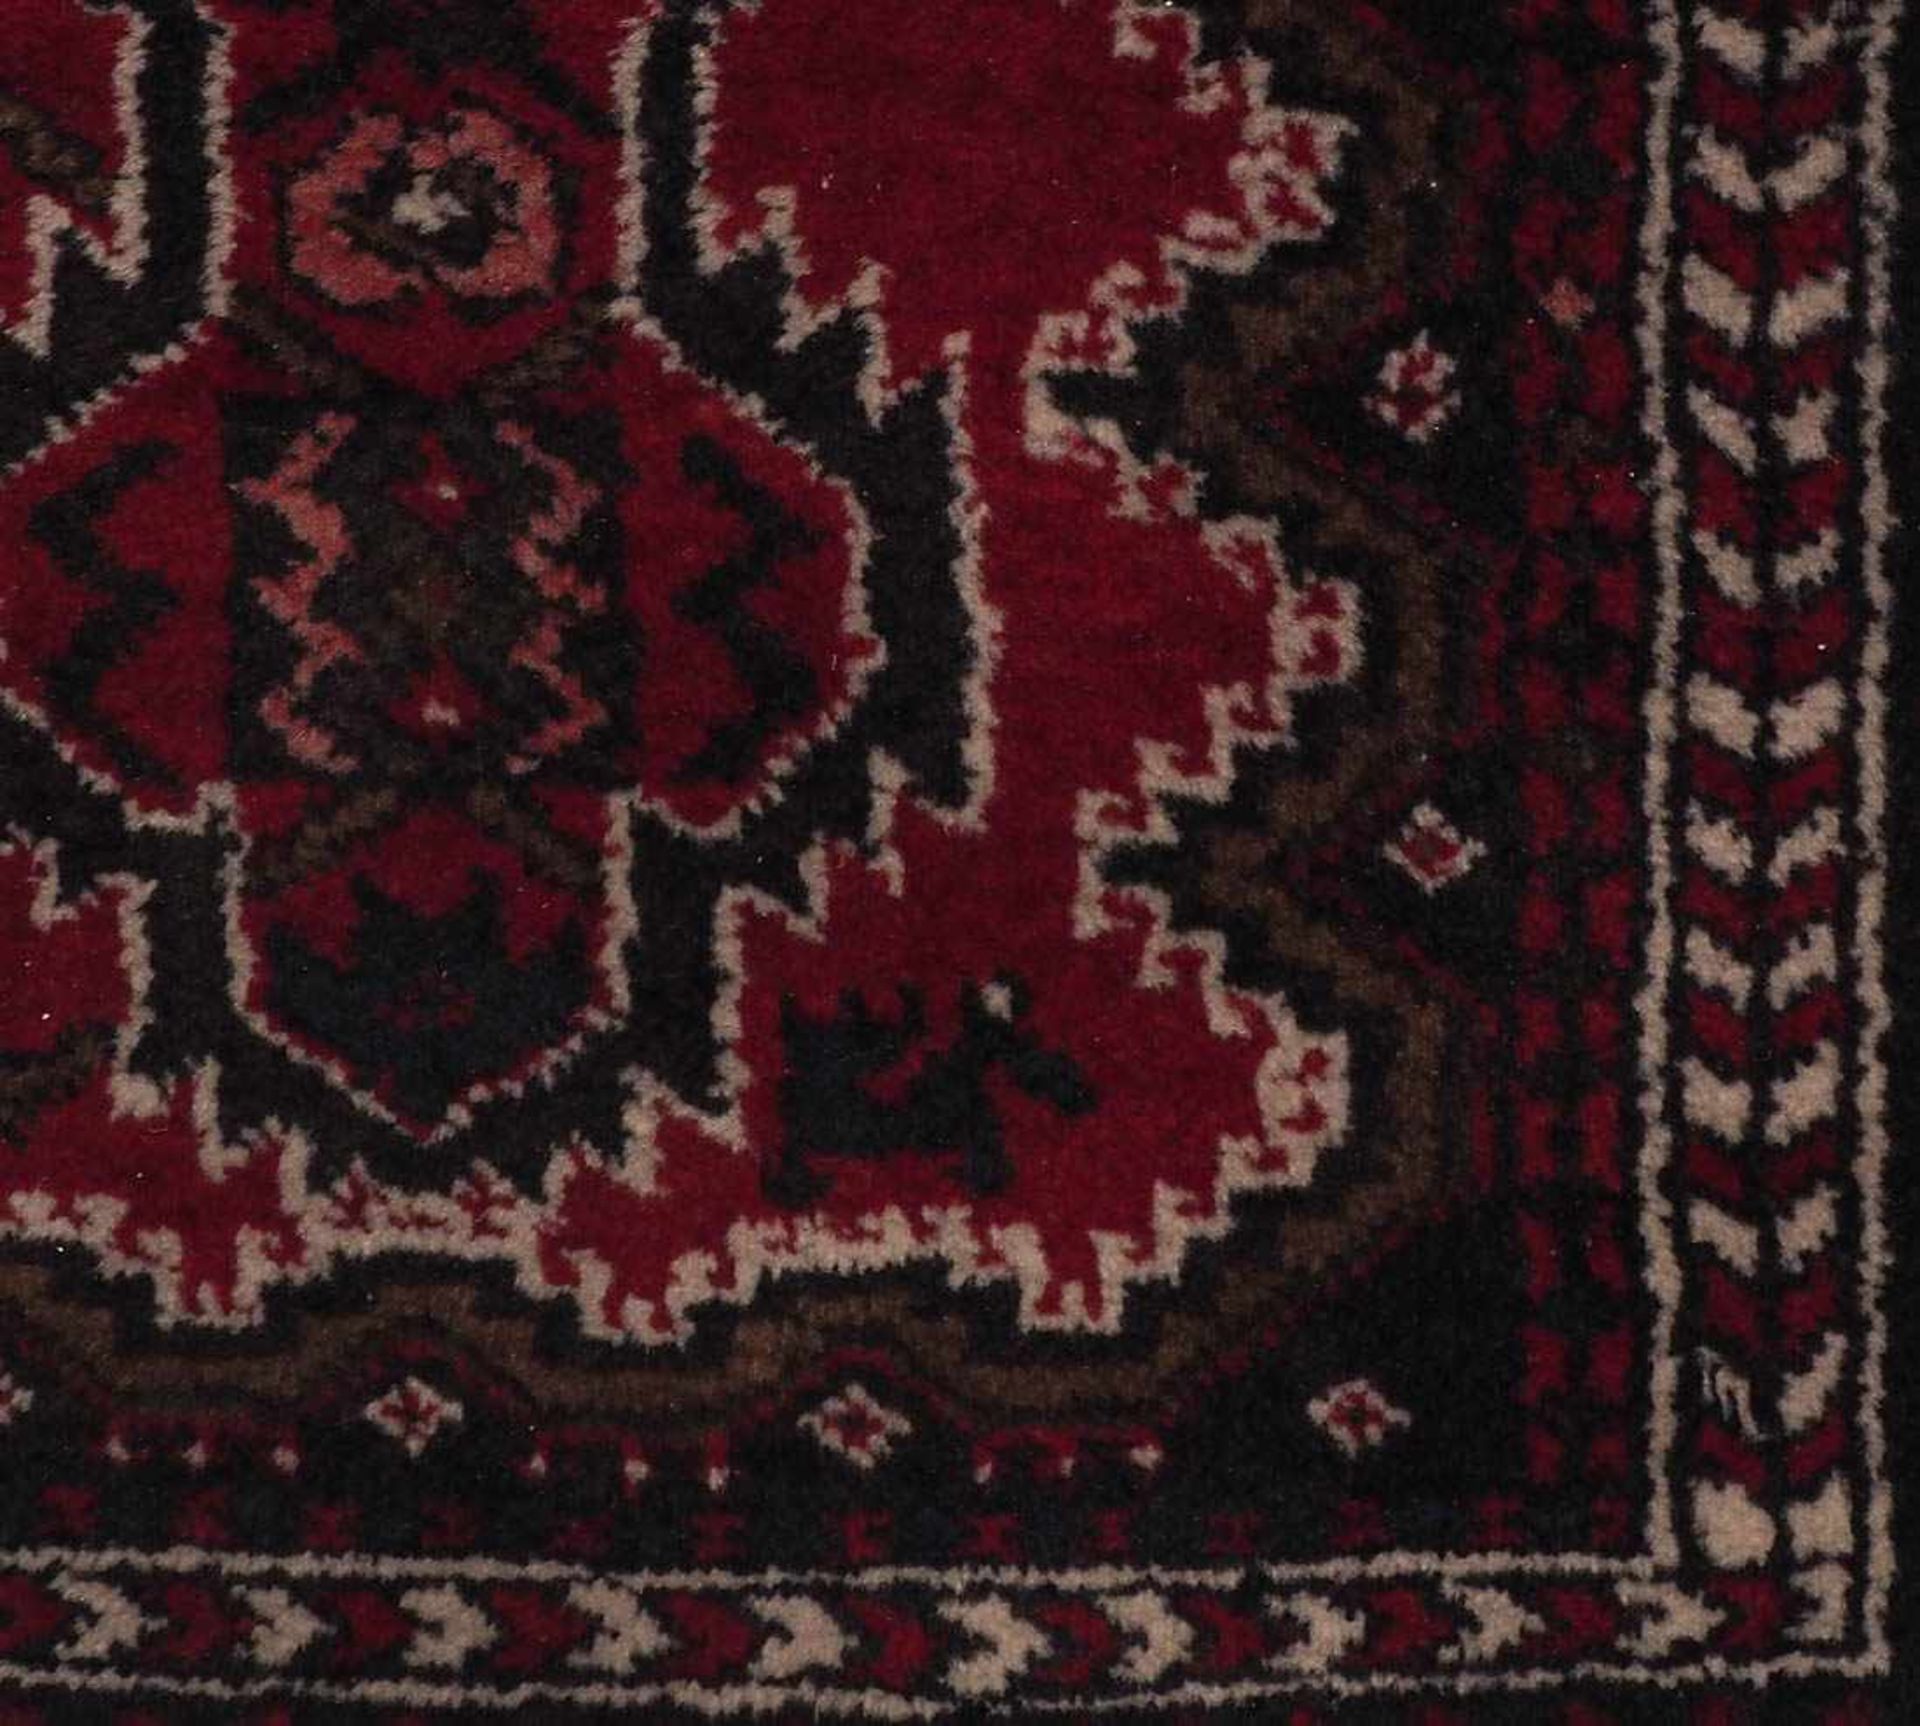 Afghan-Galerie Rotgrundiges Hauptfeld mit zahlreichen Hakenrauten und acht Blütenarrengements. - Bild 2 aus 2